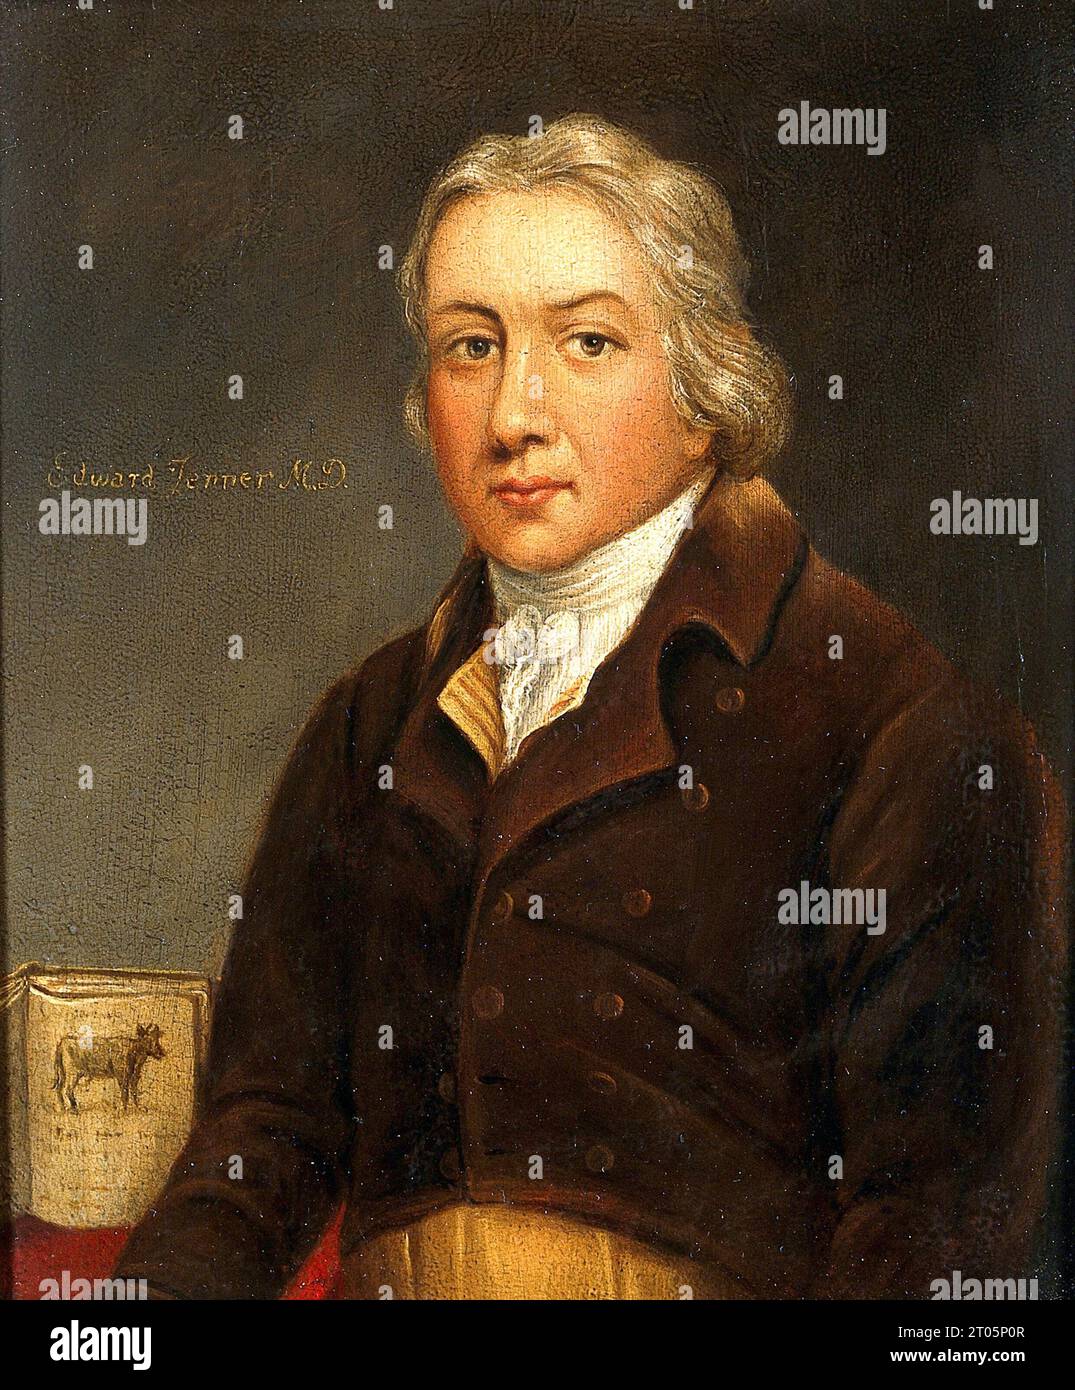 Edward Jenner, 1749–1823, war ein englischer Arzt und Wissenschaftler, der Pionierarbeit beim Konzept von Impfstoffen leistete und den weltweit ersten Impfstoff gegen Pocken schuf. Ölmalerei. Stockfoto